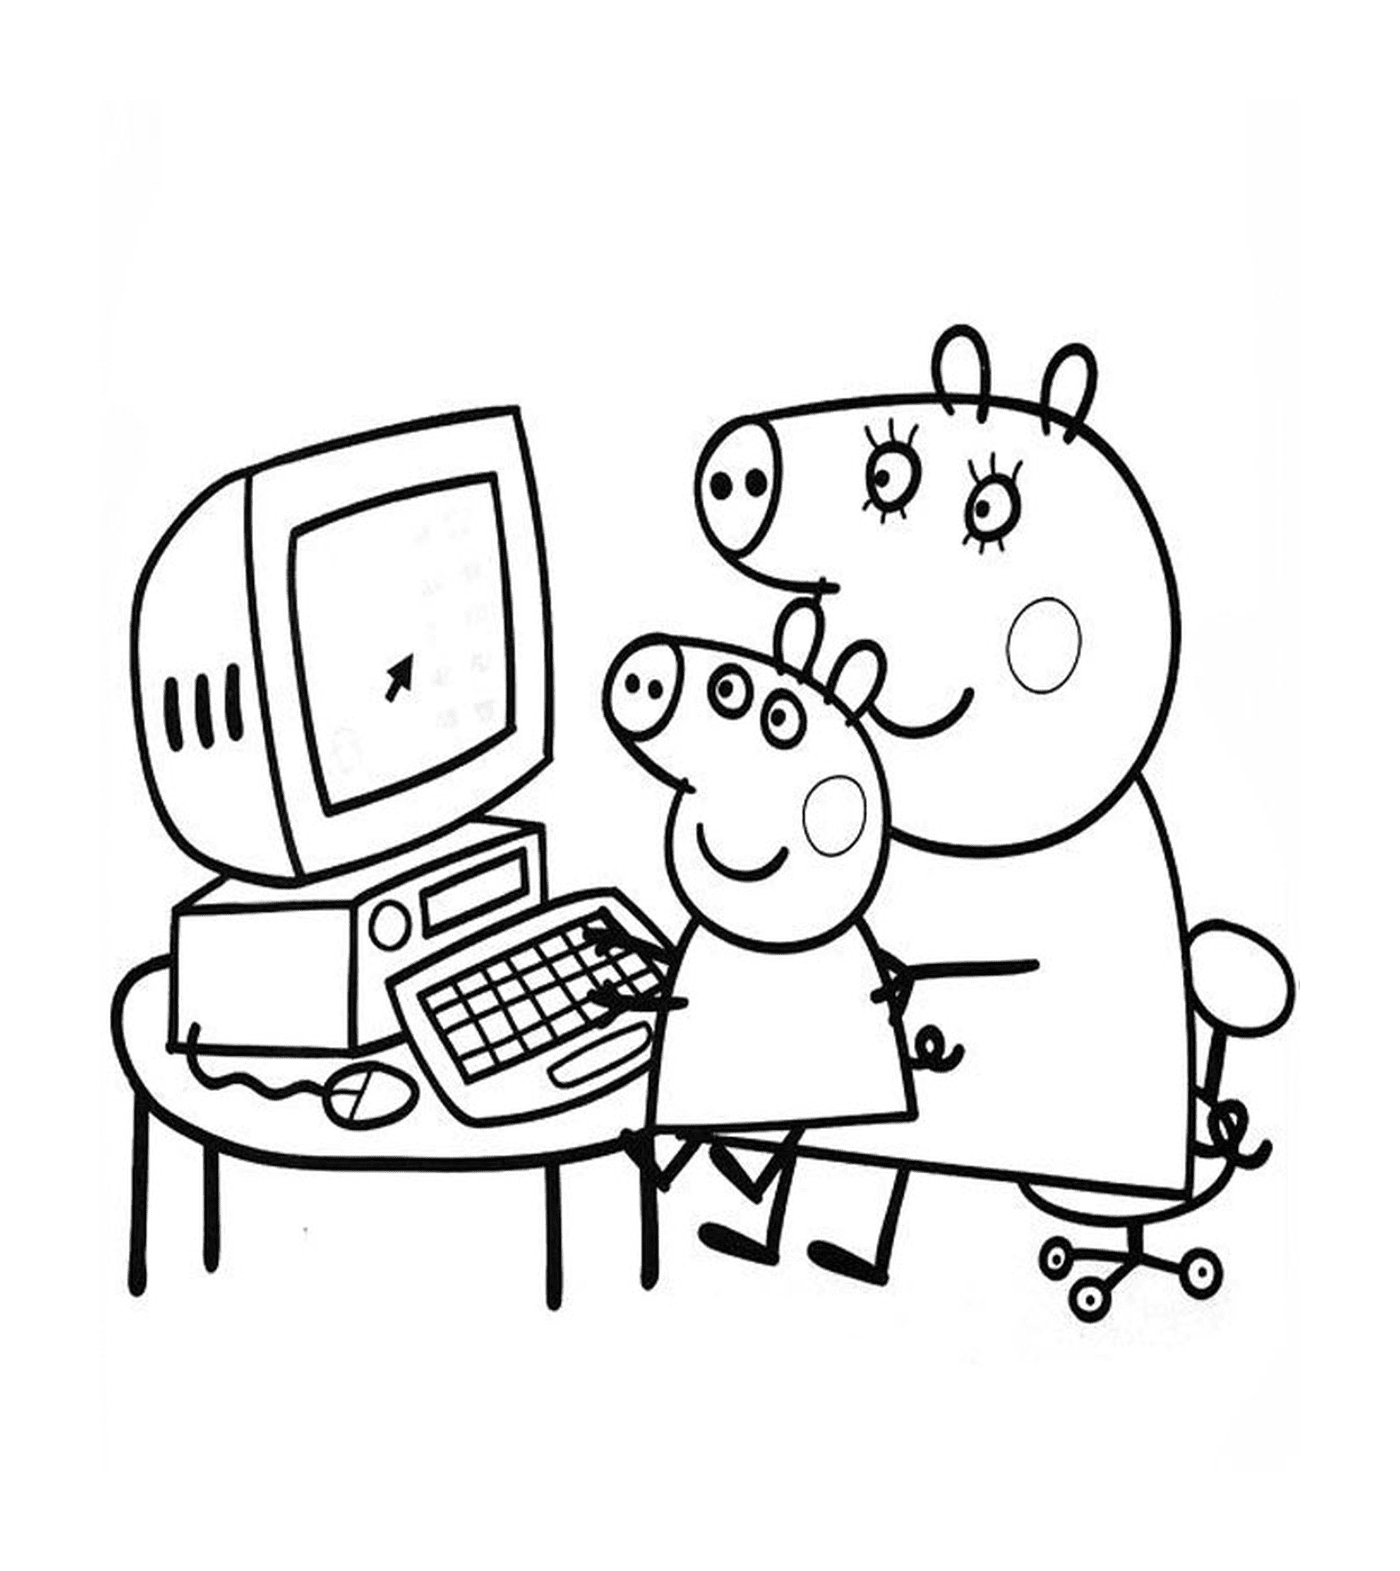  بيبابا خندق ووالده على الكمبيوتر 